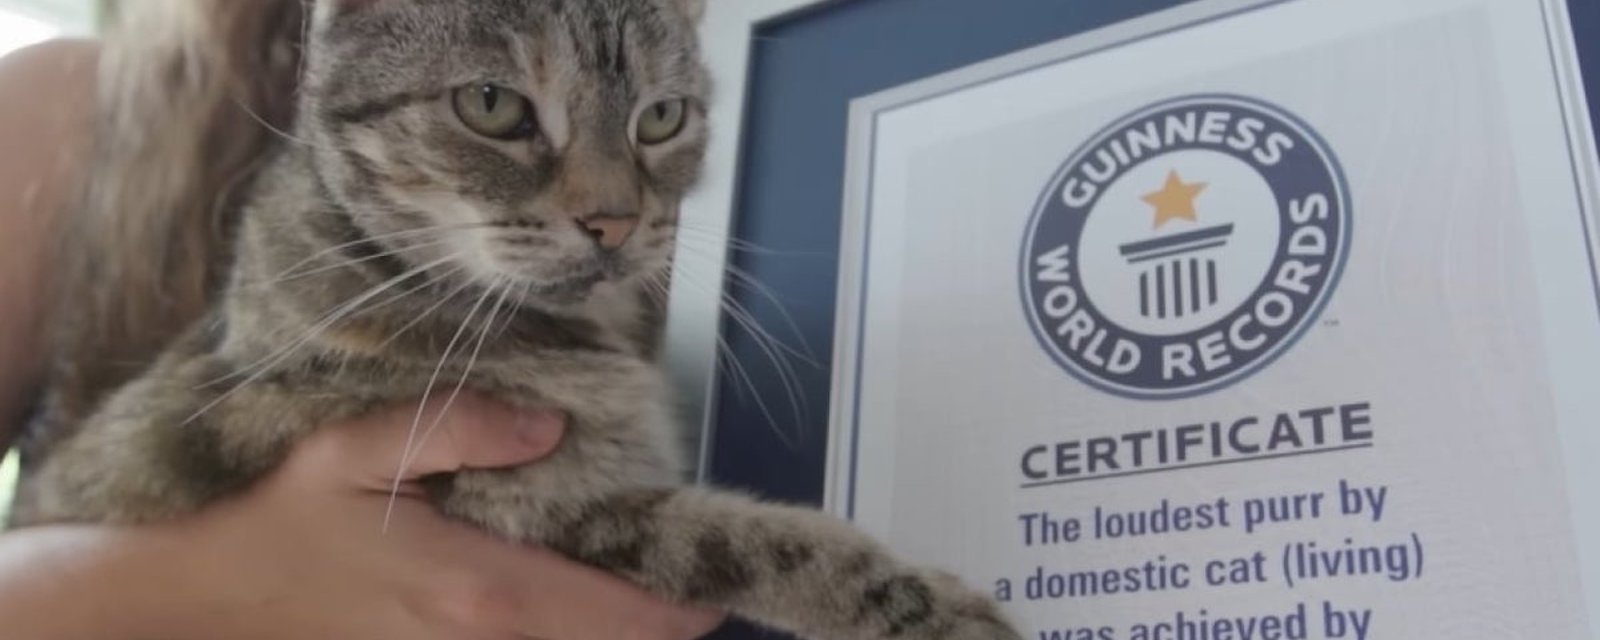 Insolite: cette chatte détient le record mondial du plus fort ronronnement